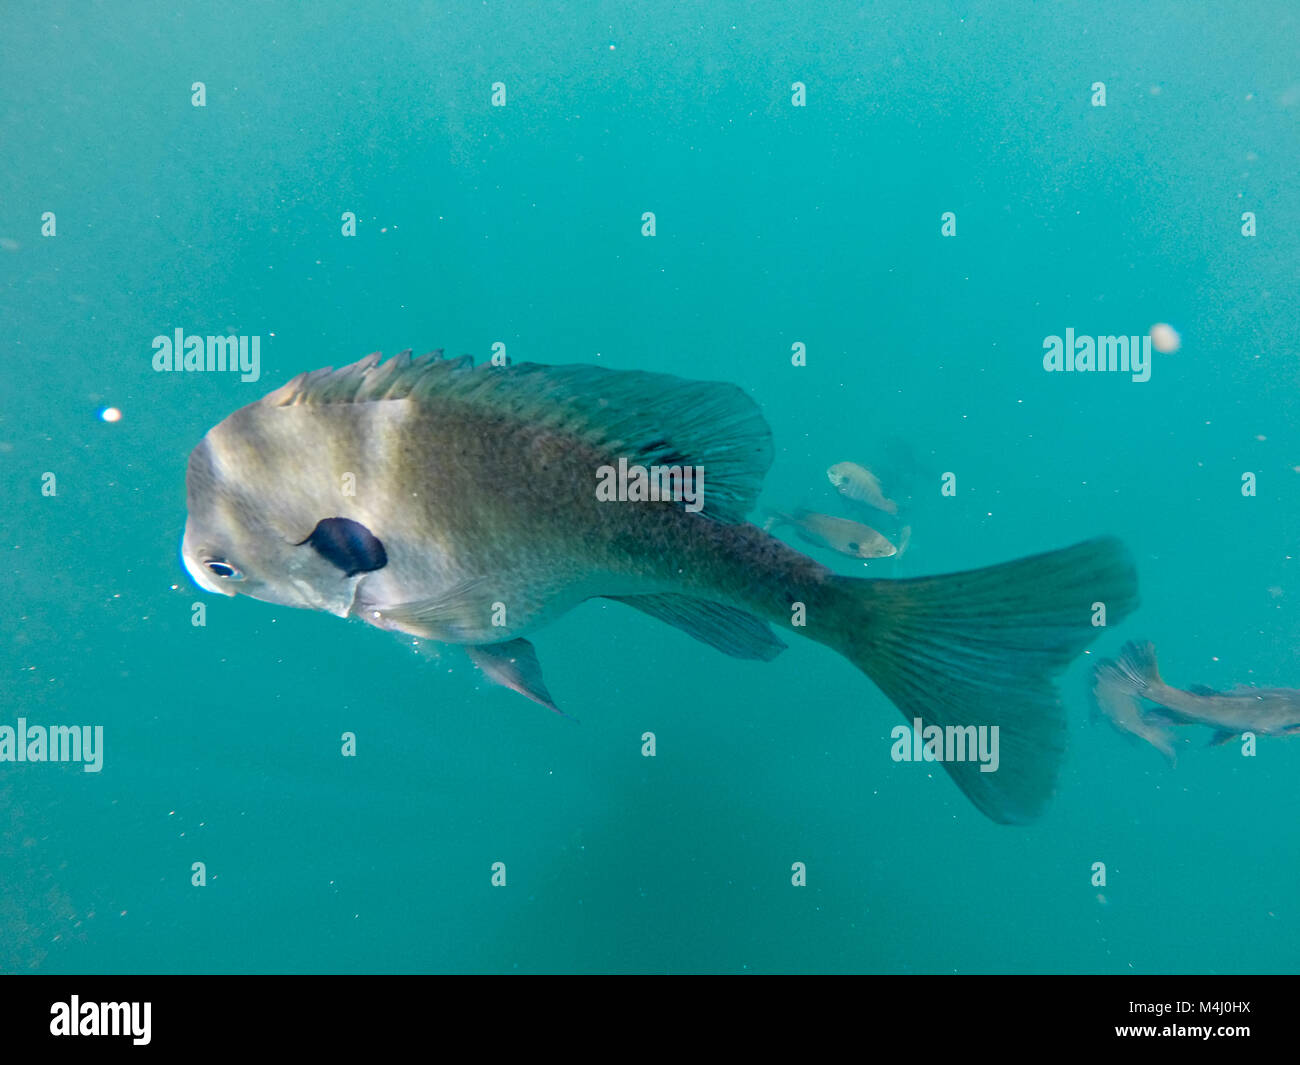 crappie fish swimming around blue waters Stock Photo